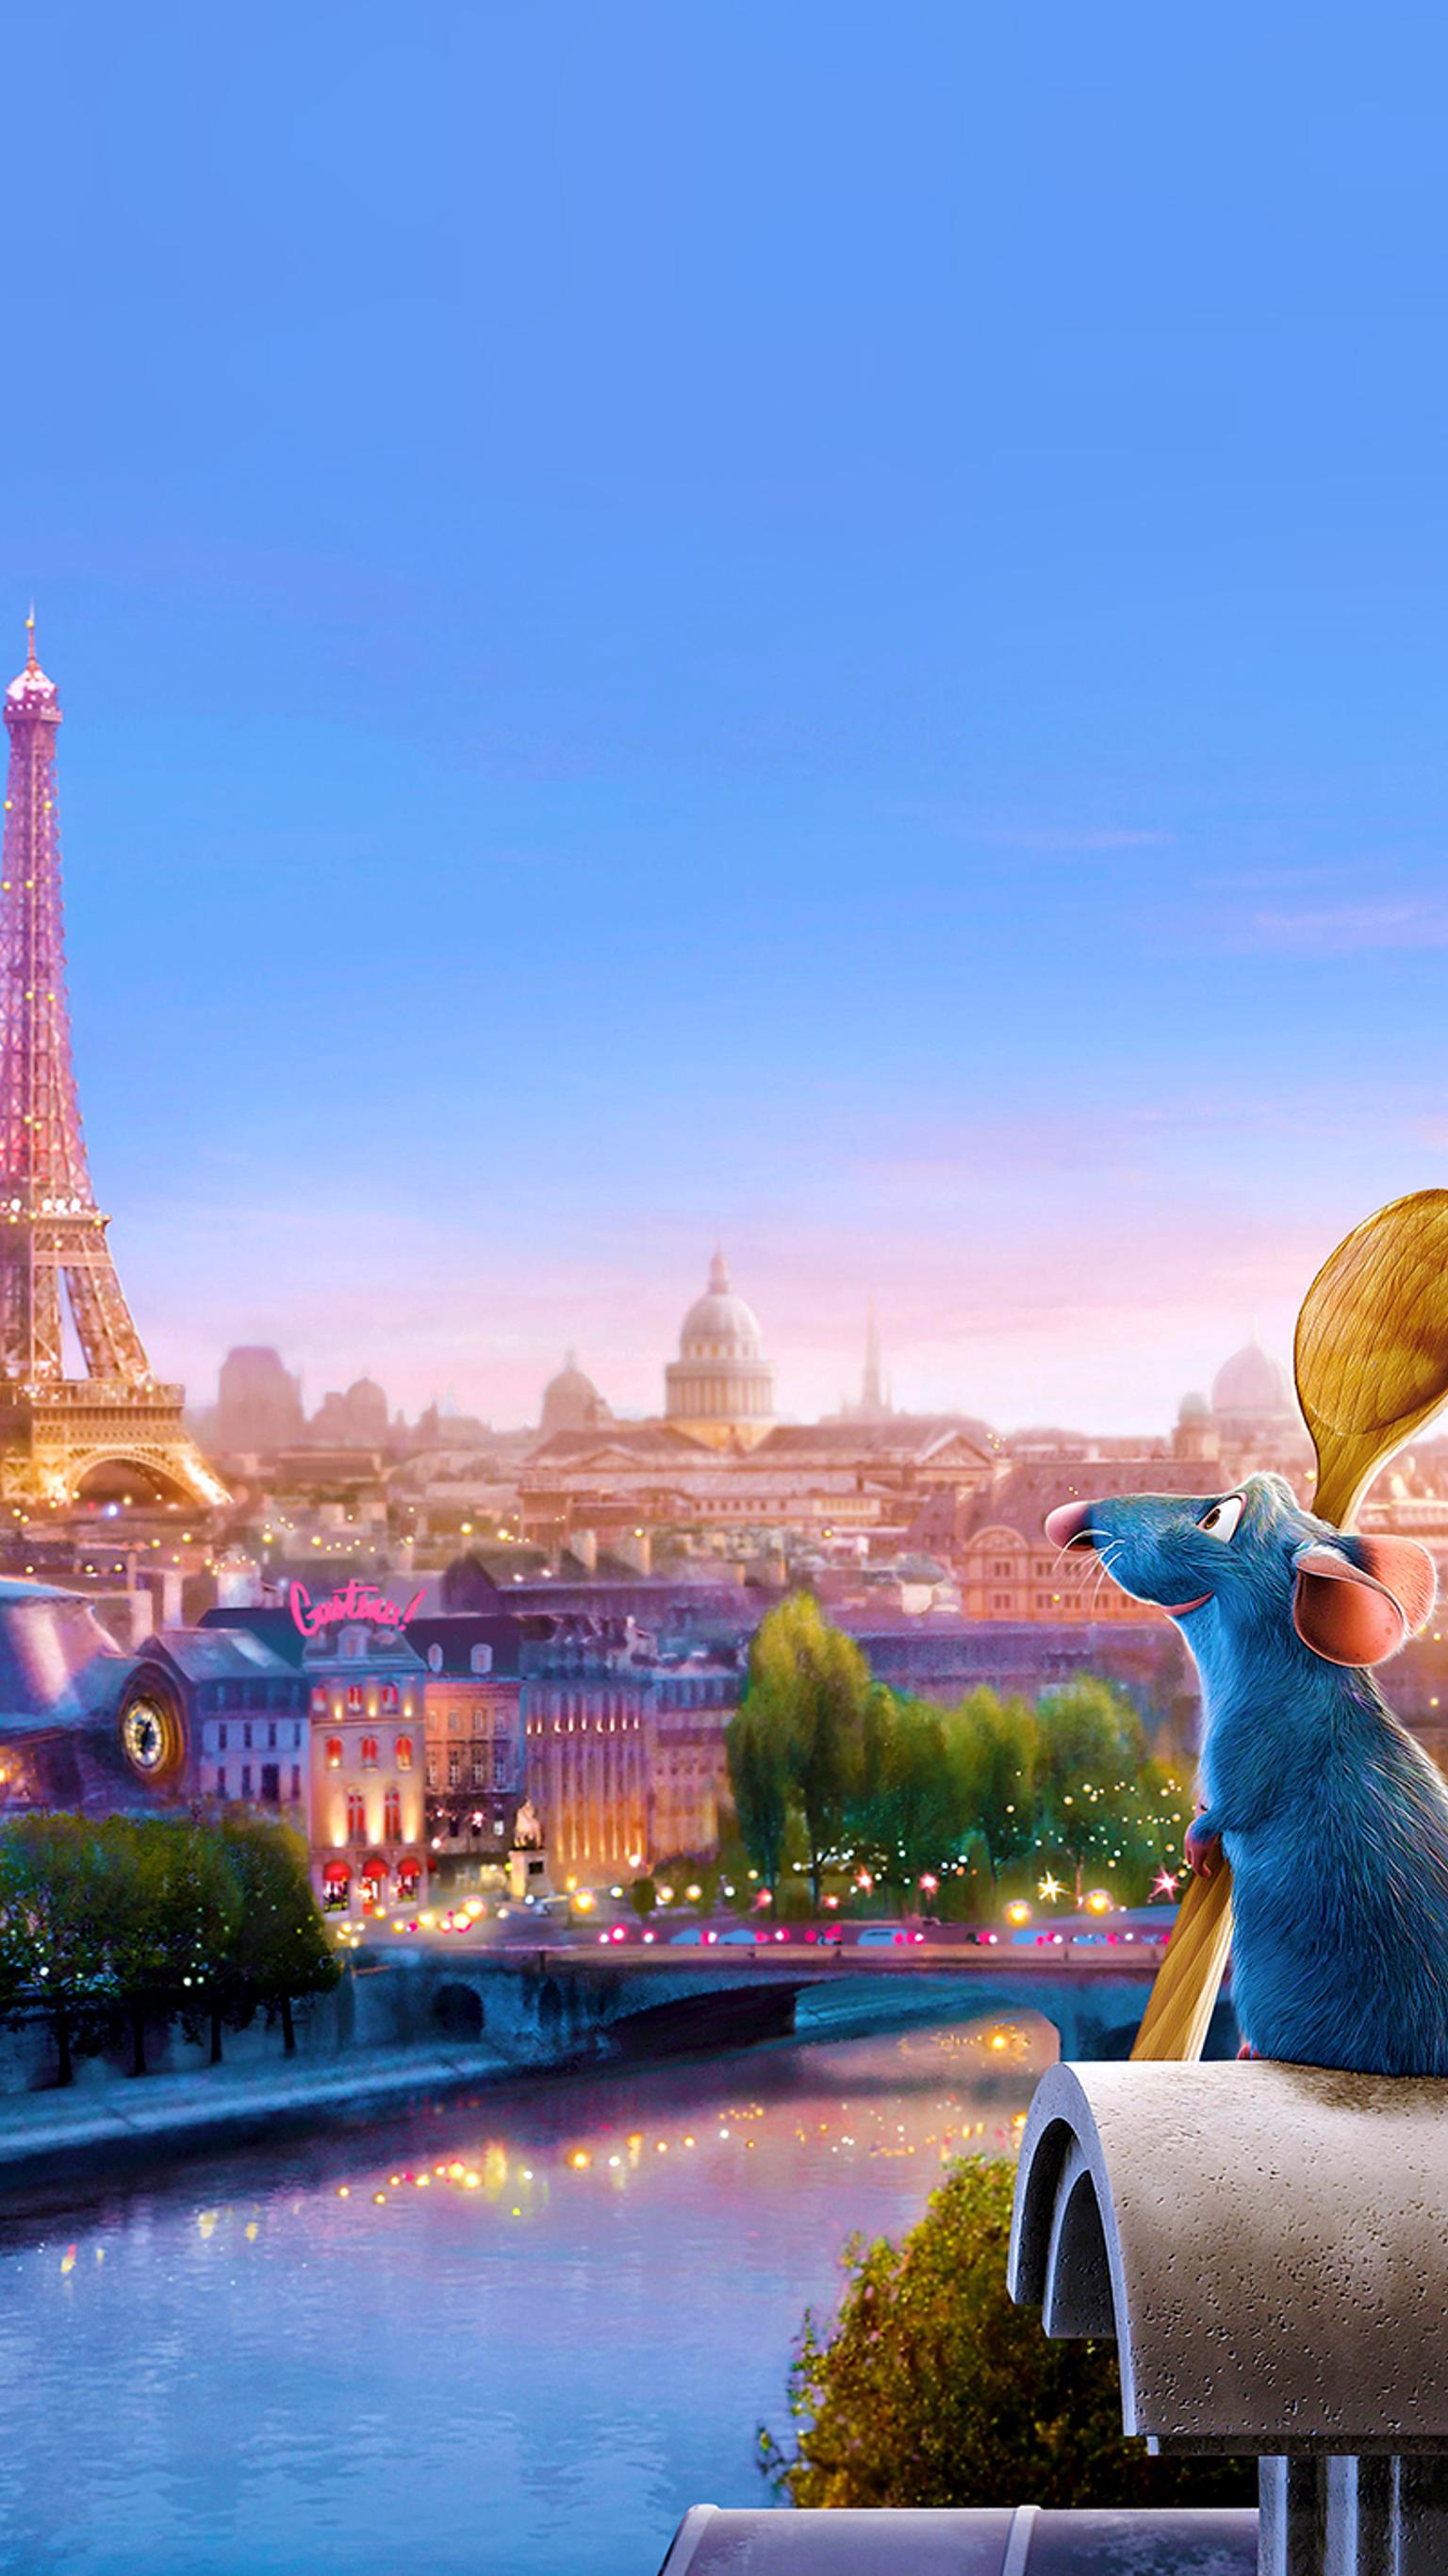 Download Ratatouille Full Movie